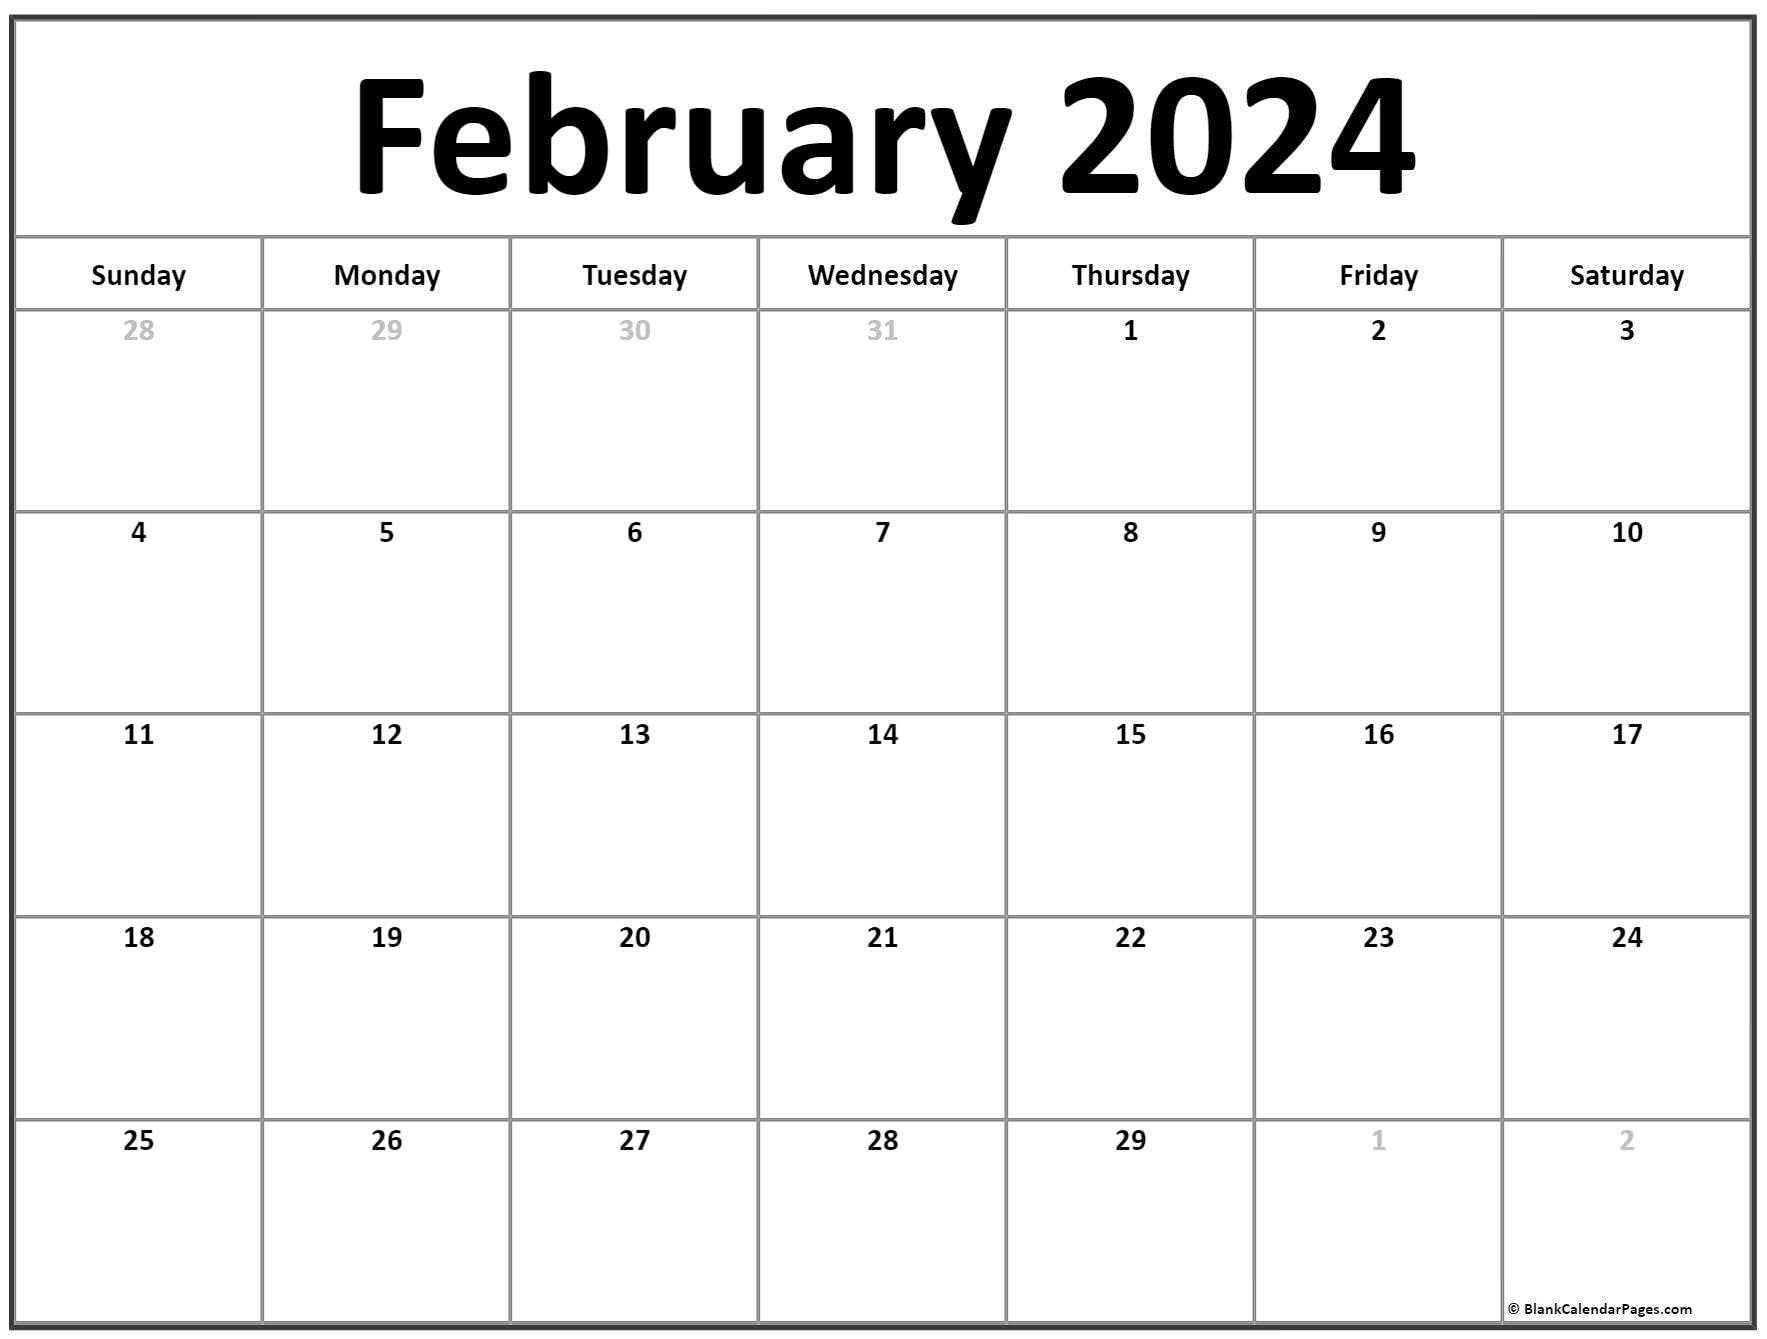 February 2024 calendar | free printable calendar